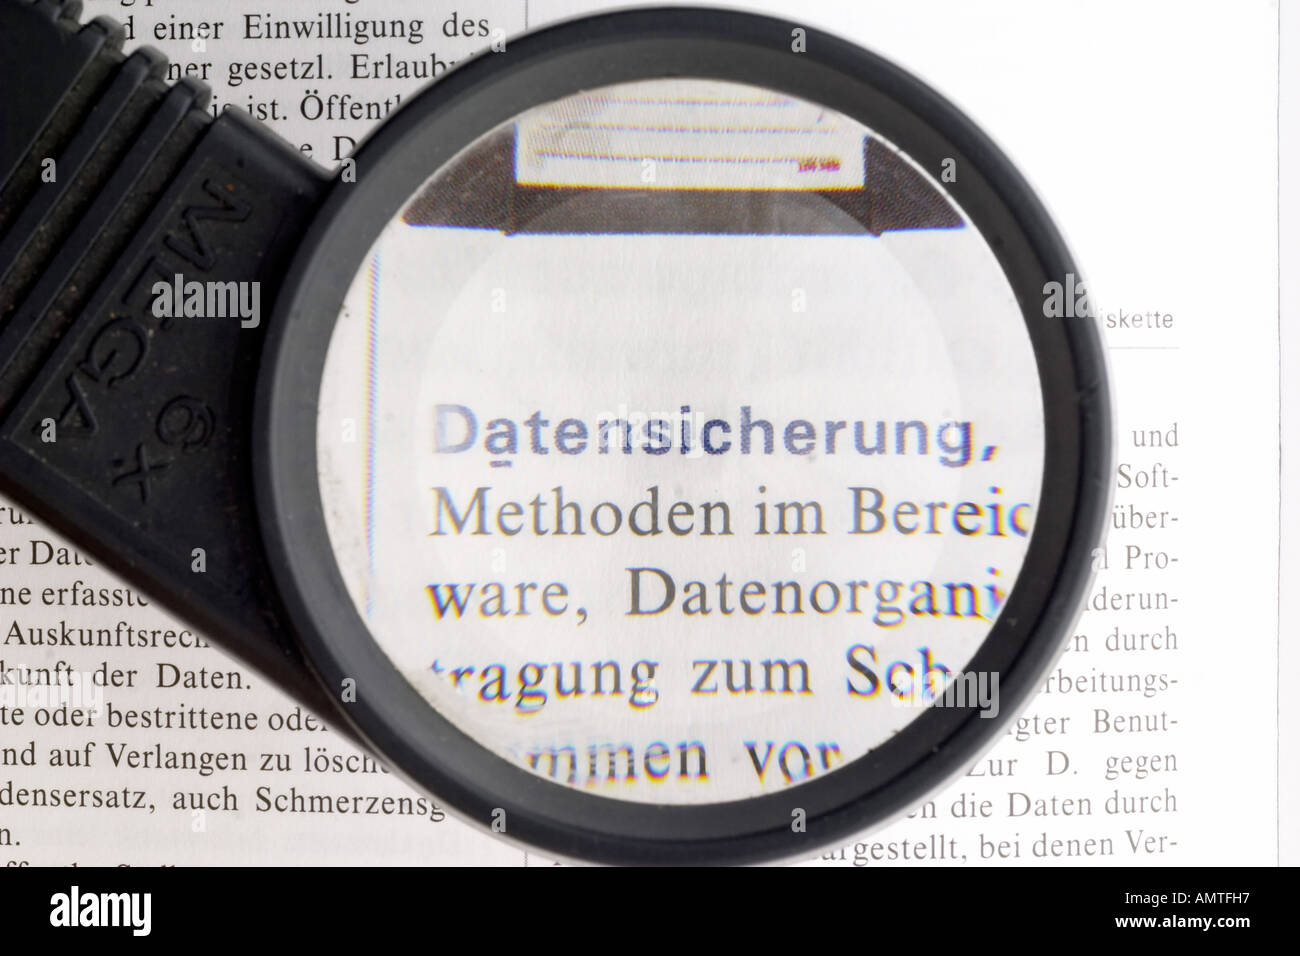 L'enregistrement des données, mot allemand, loupe Banque D'Images